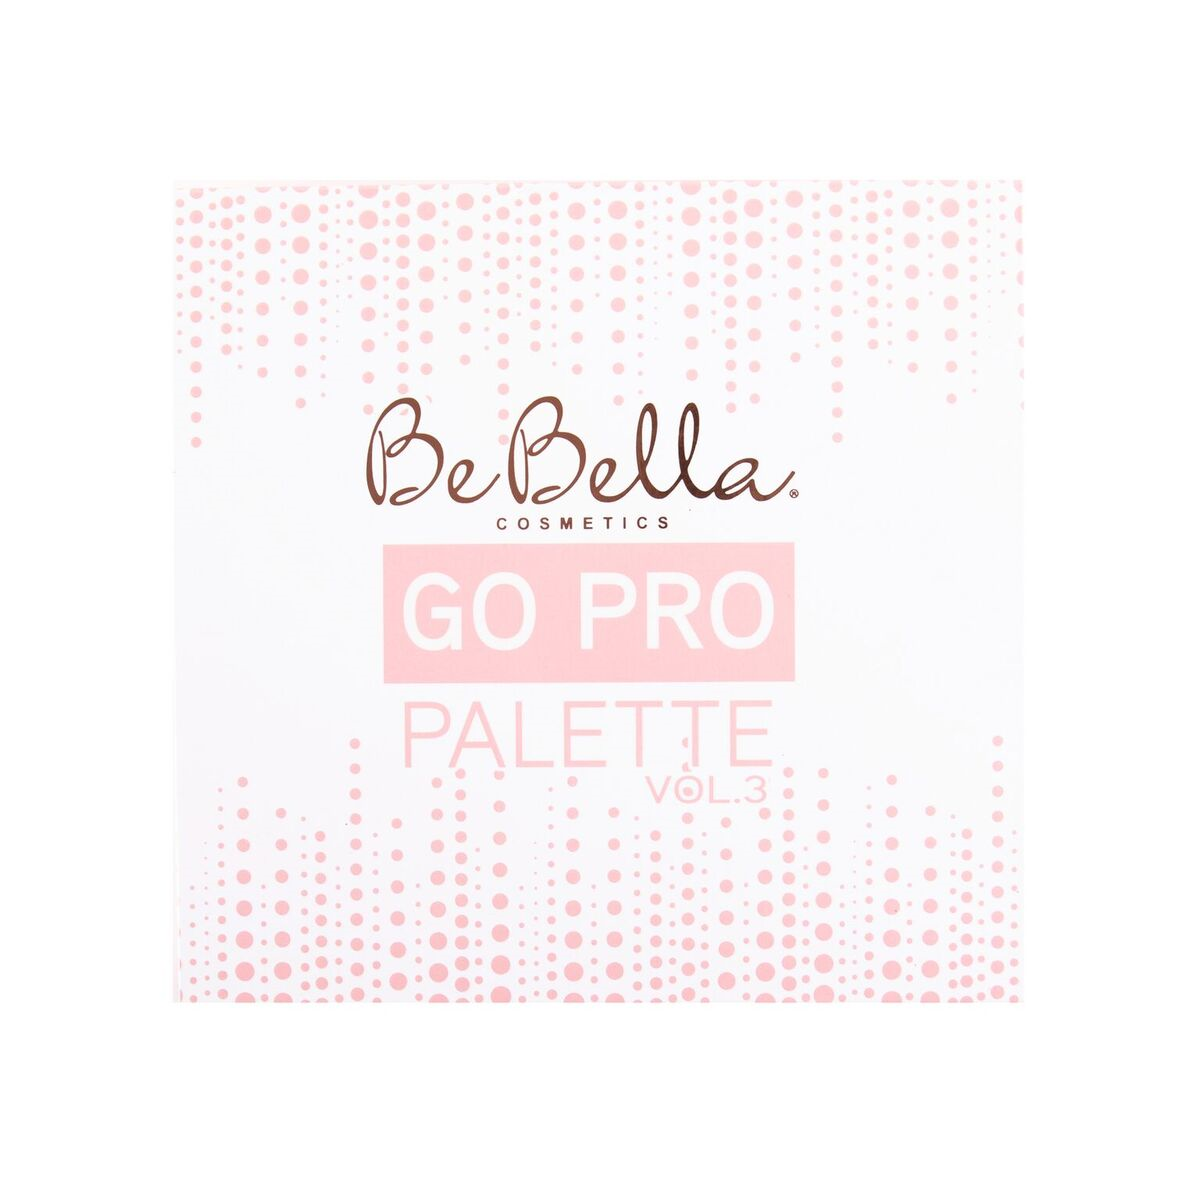 BeBella Cosmetics - Go Pro Palette 3